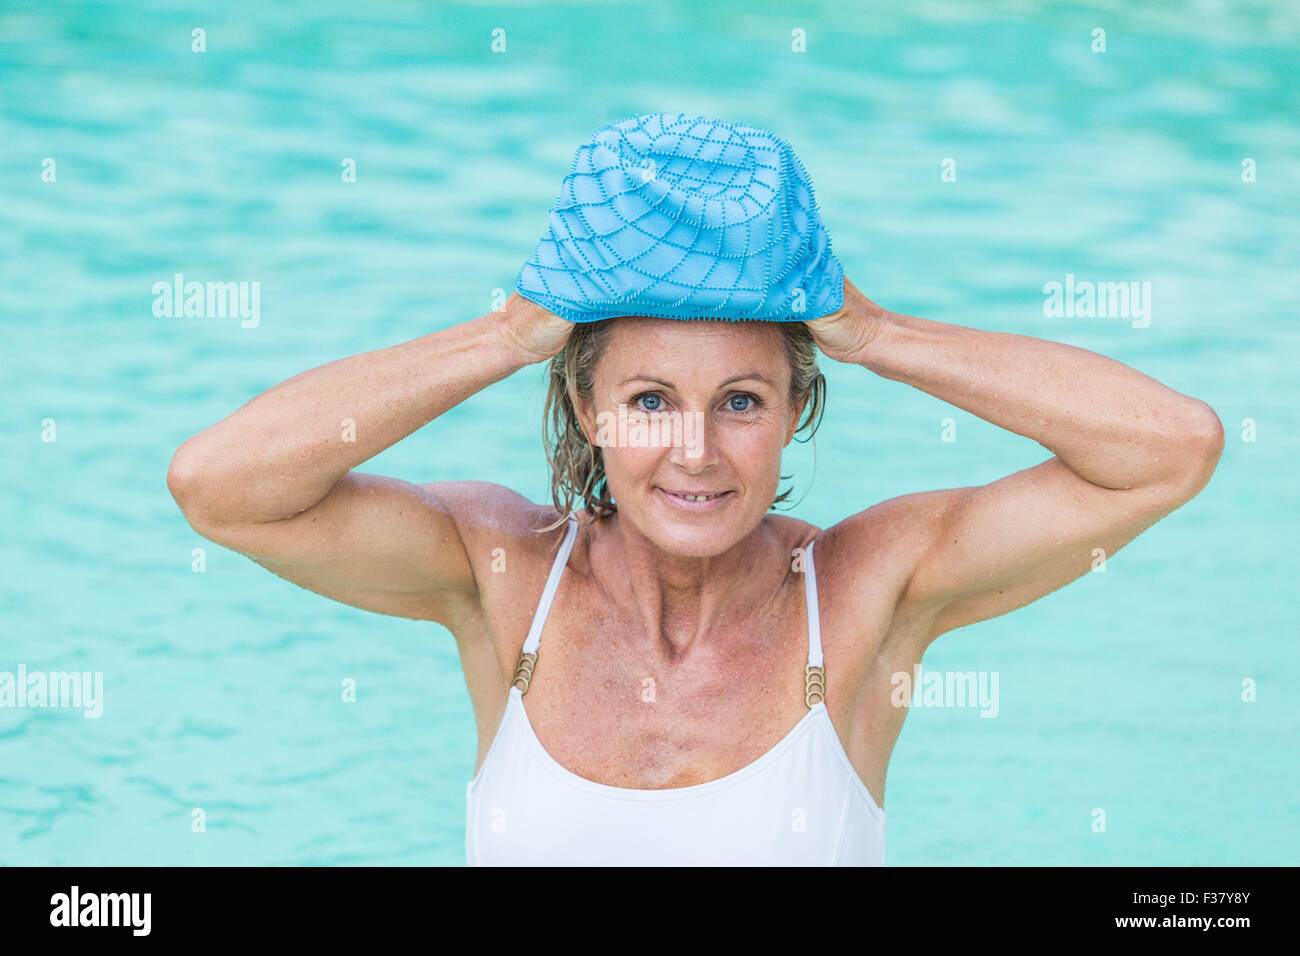 Una mujer en una piscina llevando un gorro de baño. Foto de stock